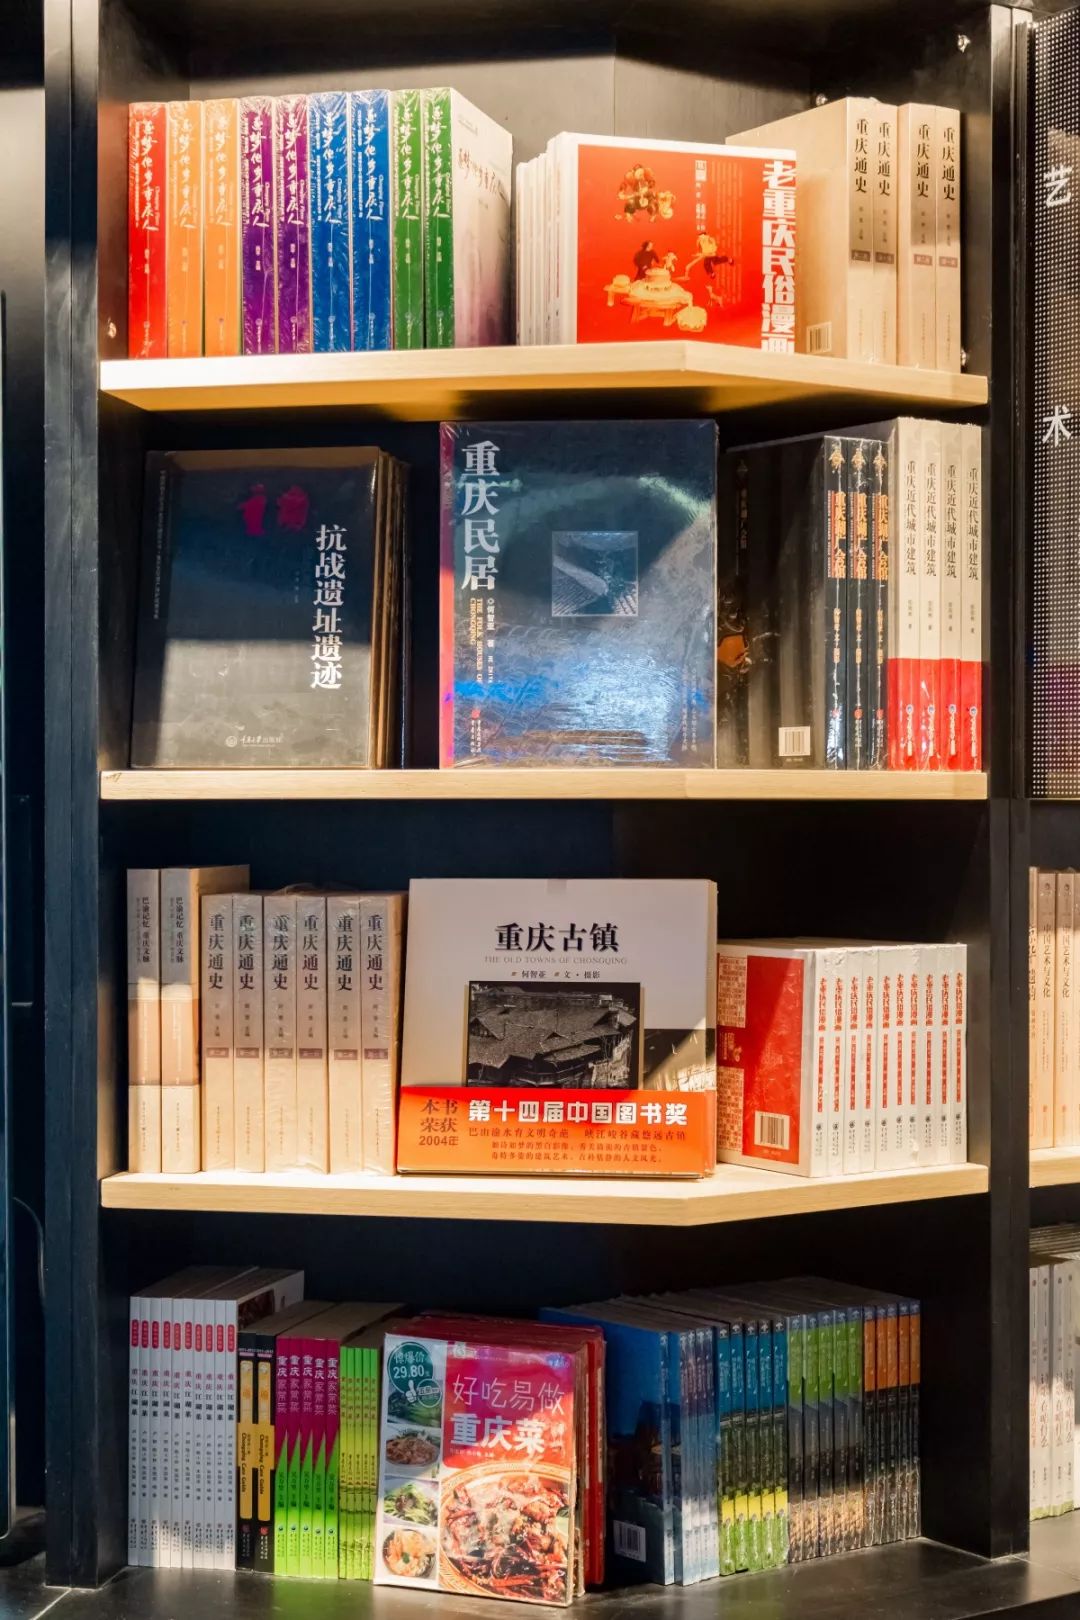 逛完这家书店，找到了重庆读书人的理想角